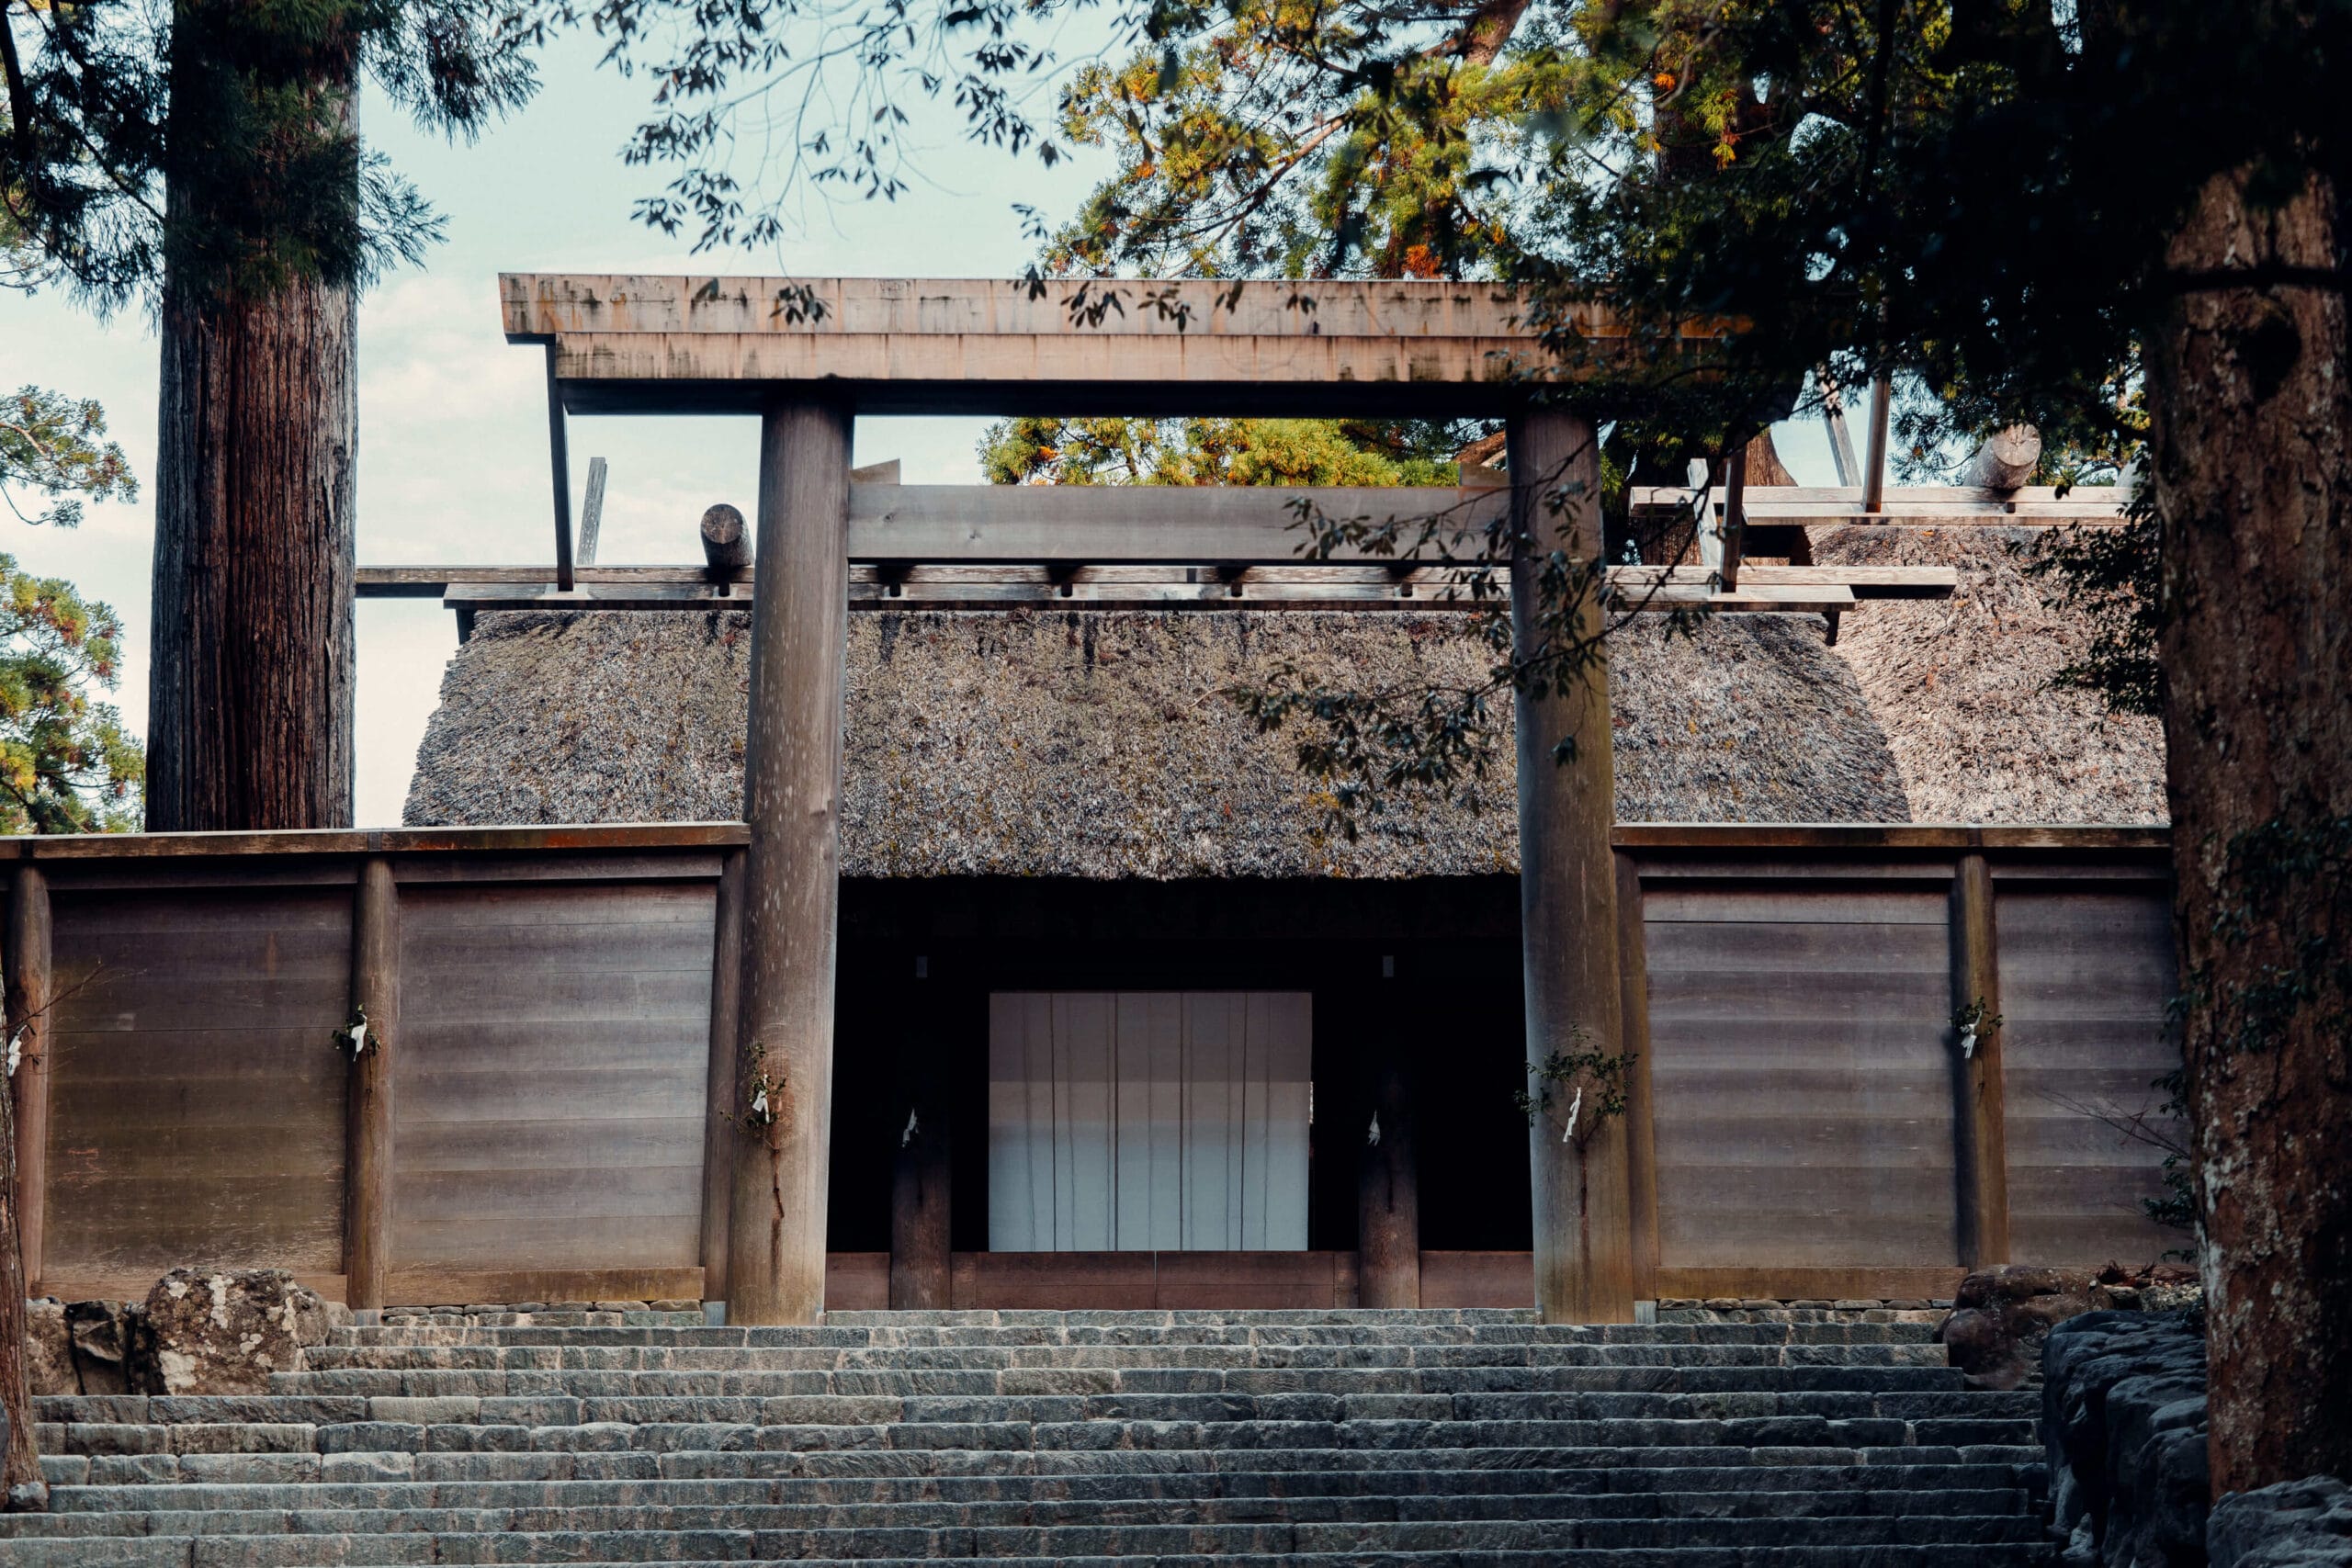 shinto shrine ise